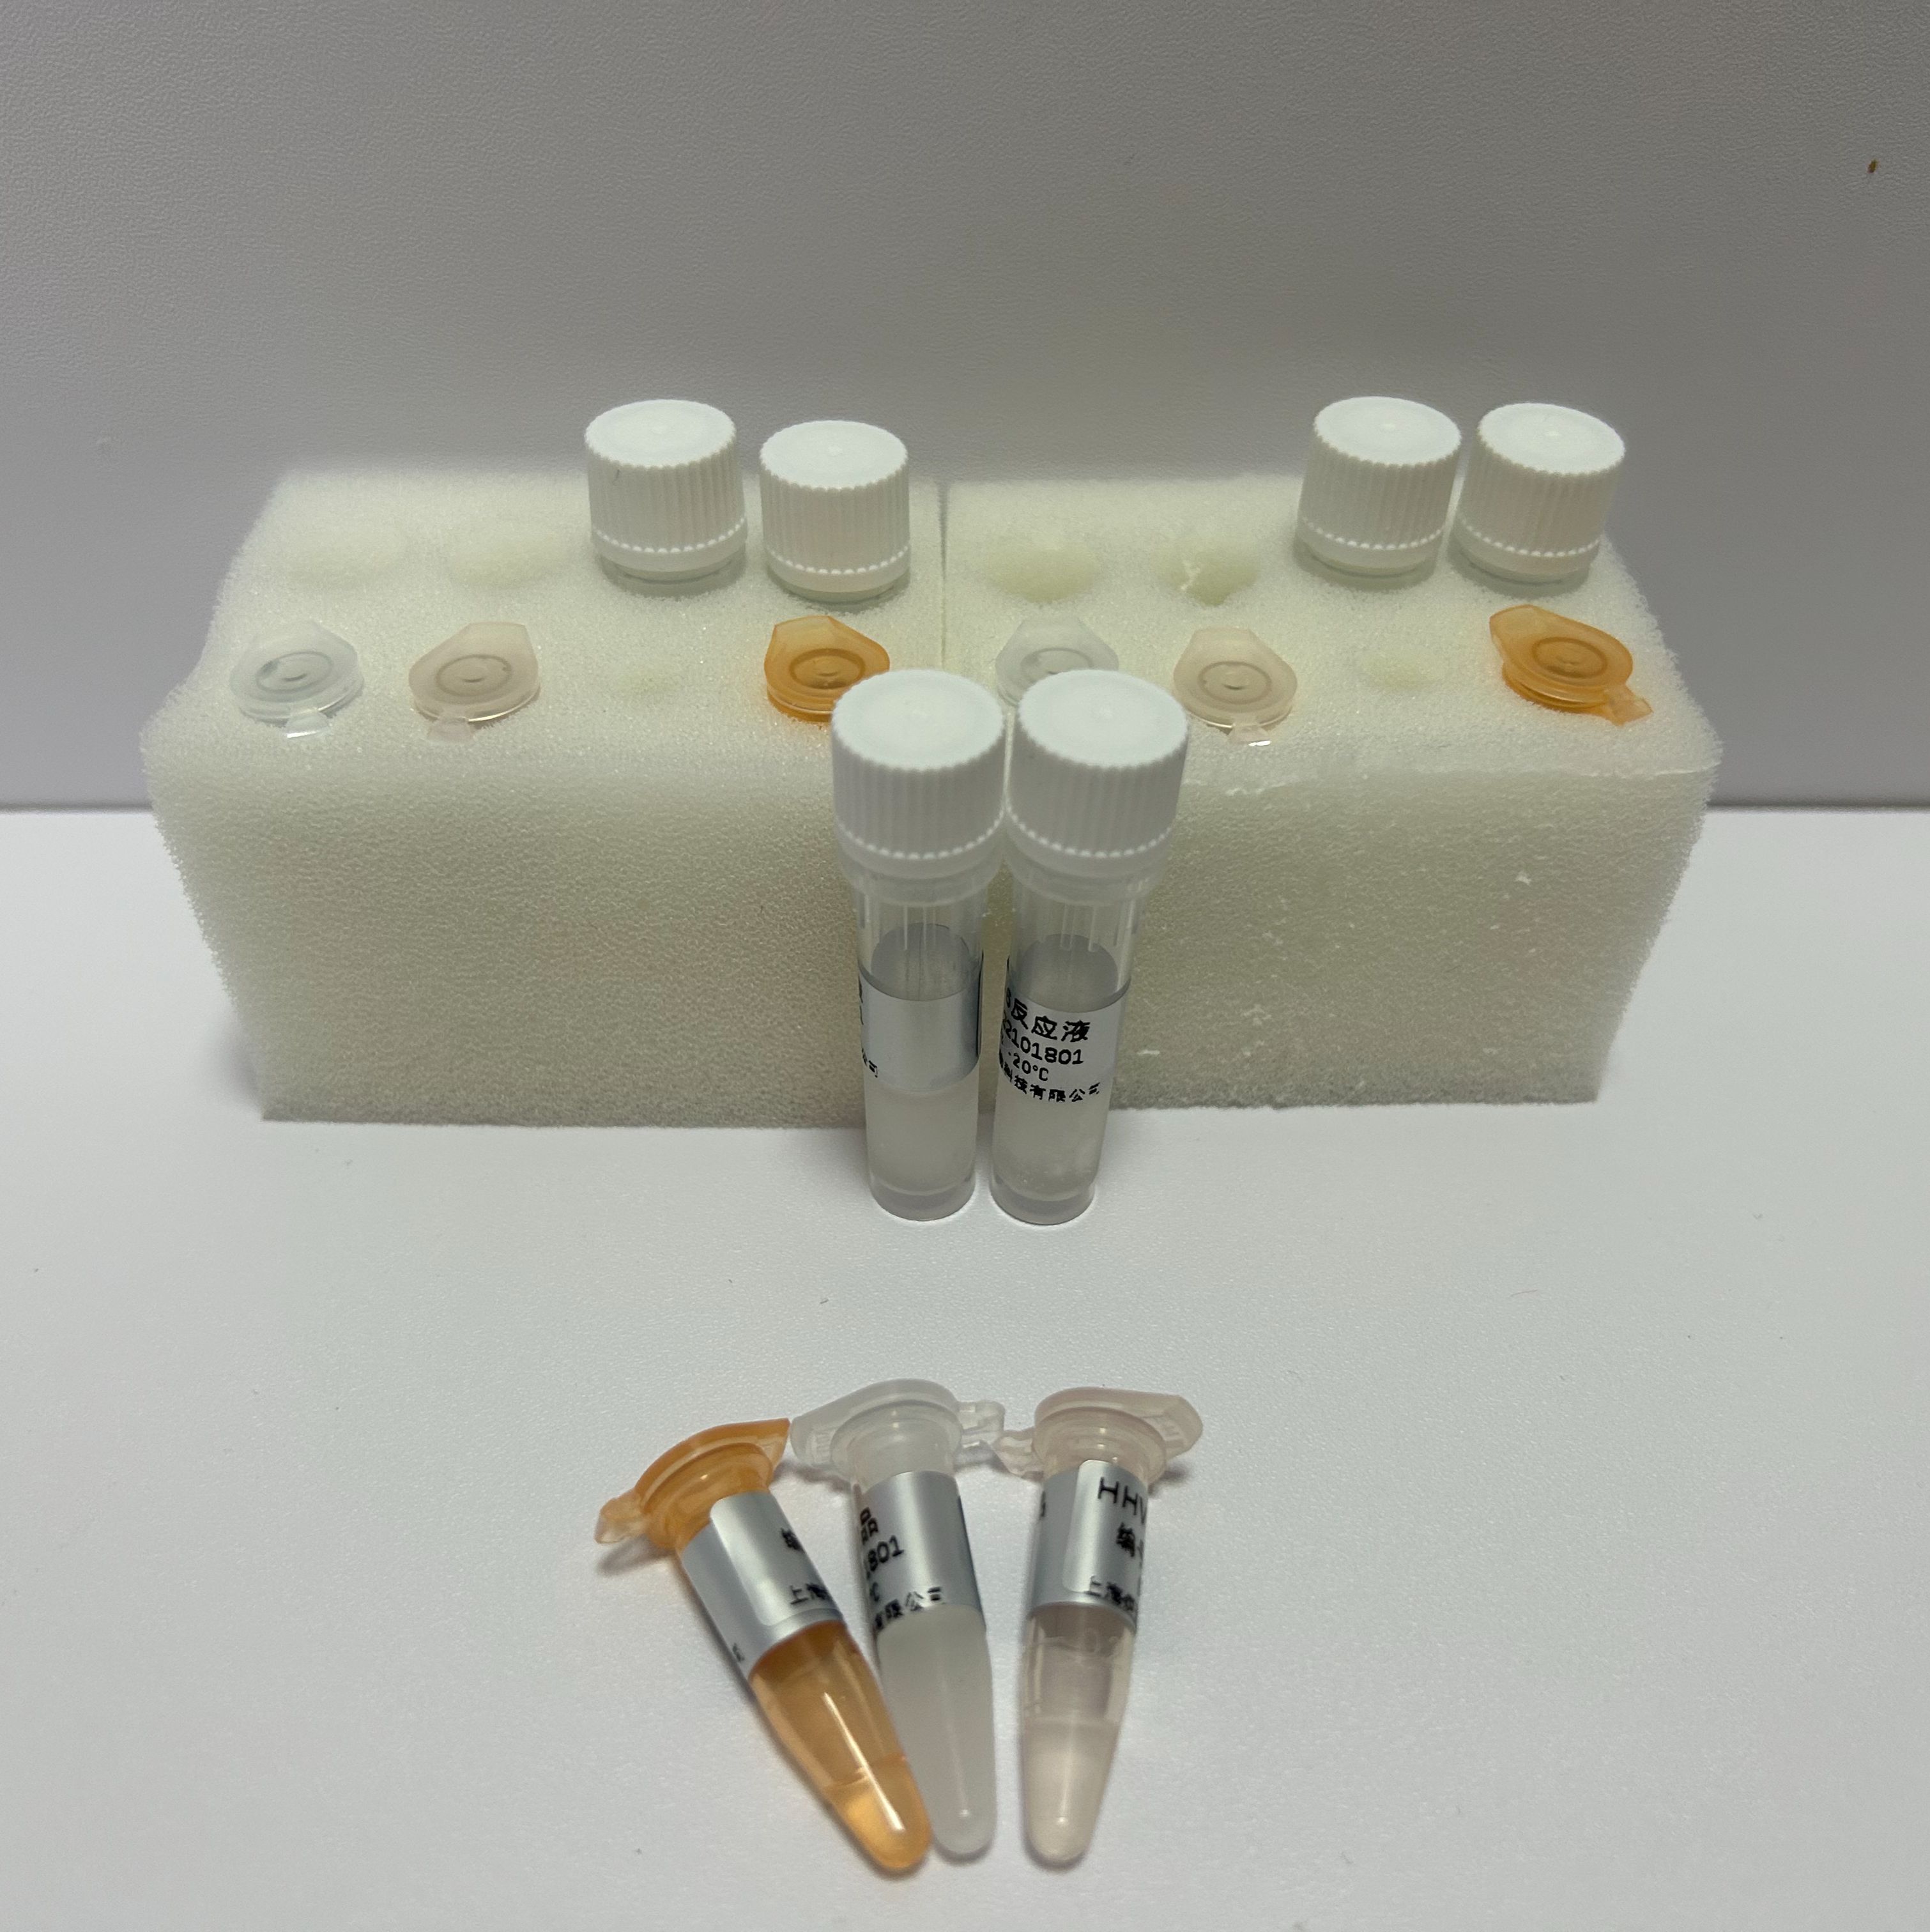 肉毒梭状芽孢杆菌G型外毒素基因PCR试剂盒